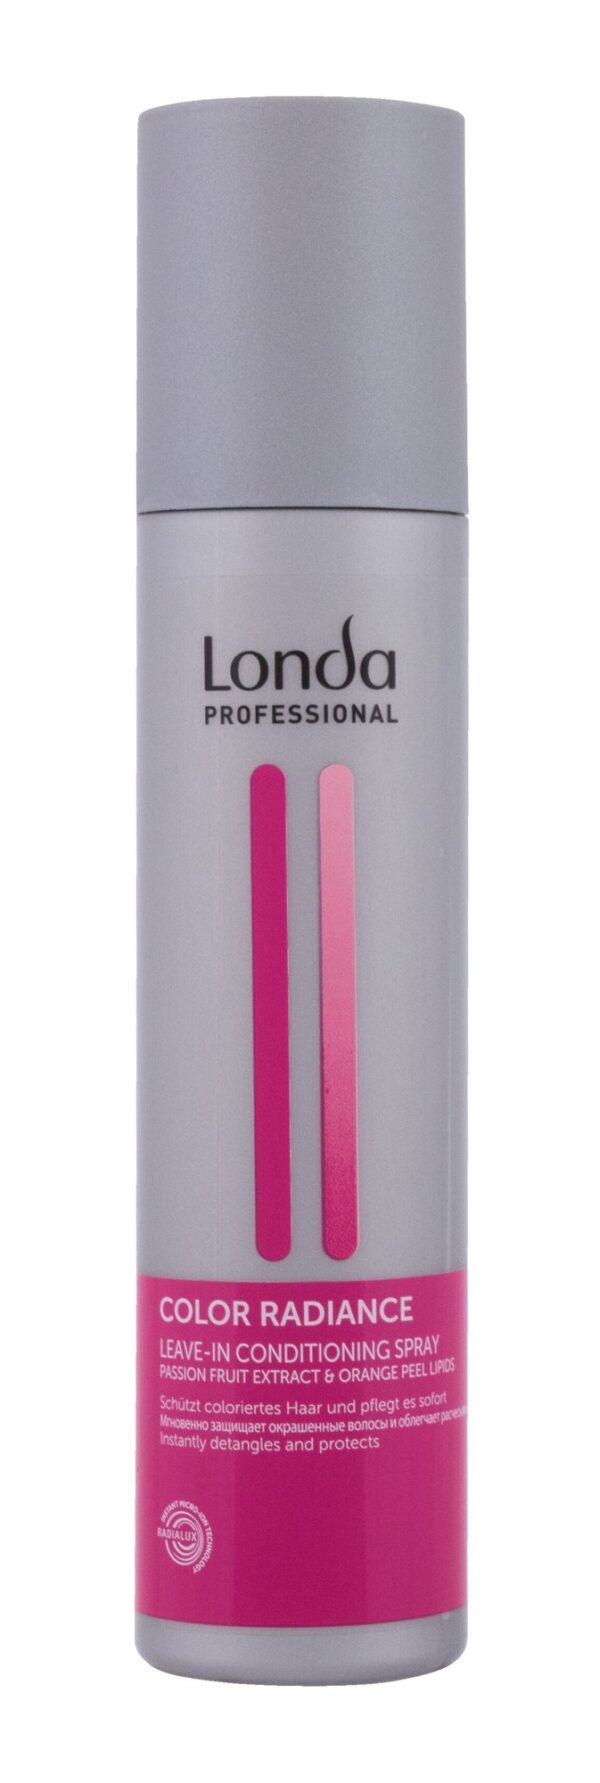 Na połysk włosów Londa Professional Color Radiance